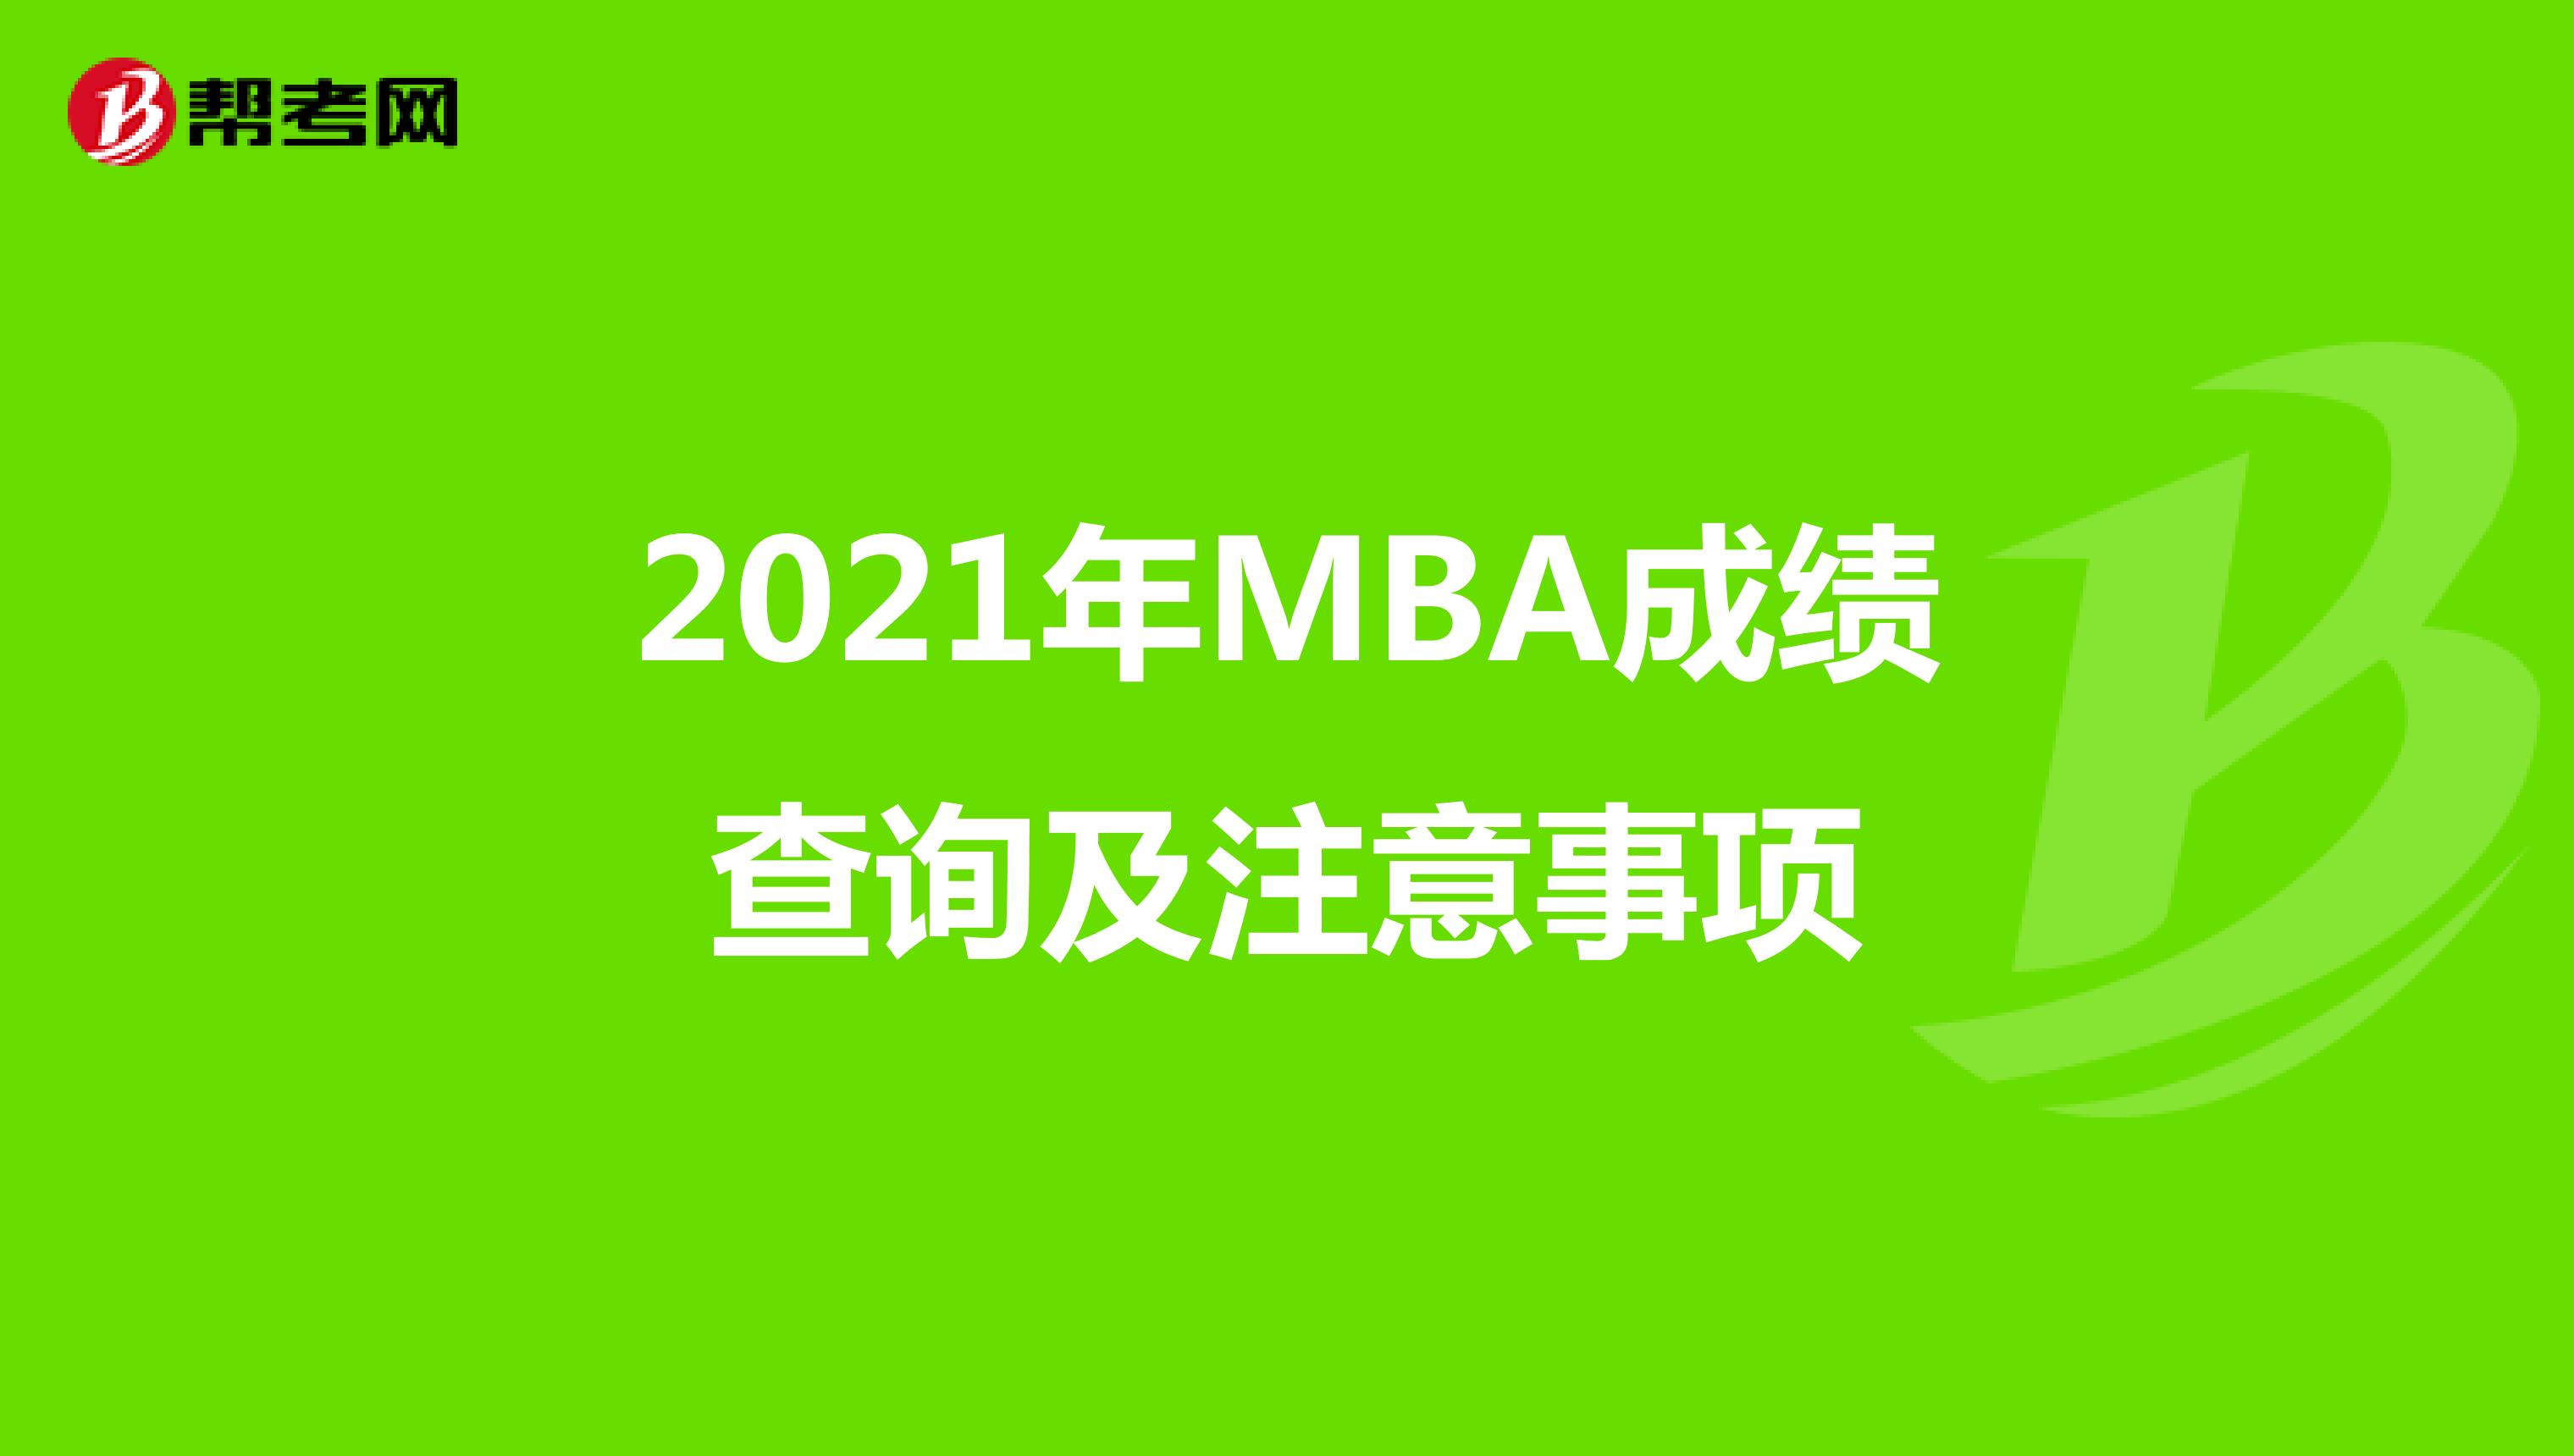 2021年MBA成绩查询及注意事项